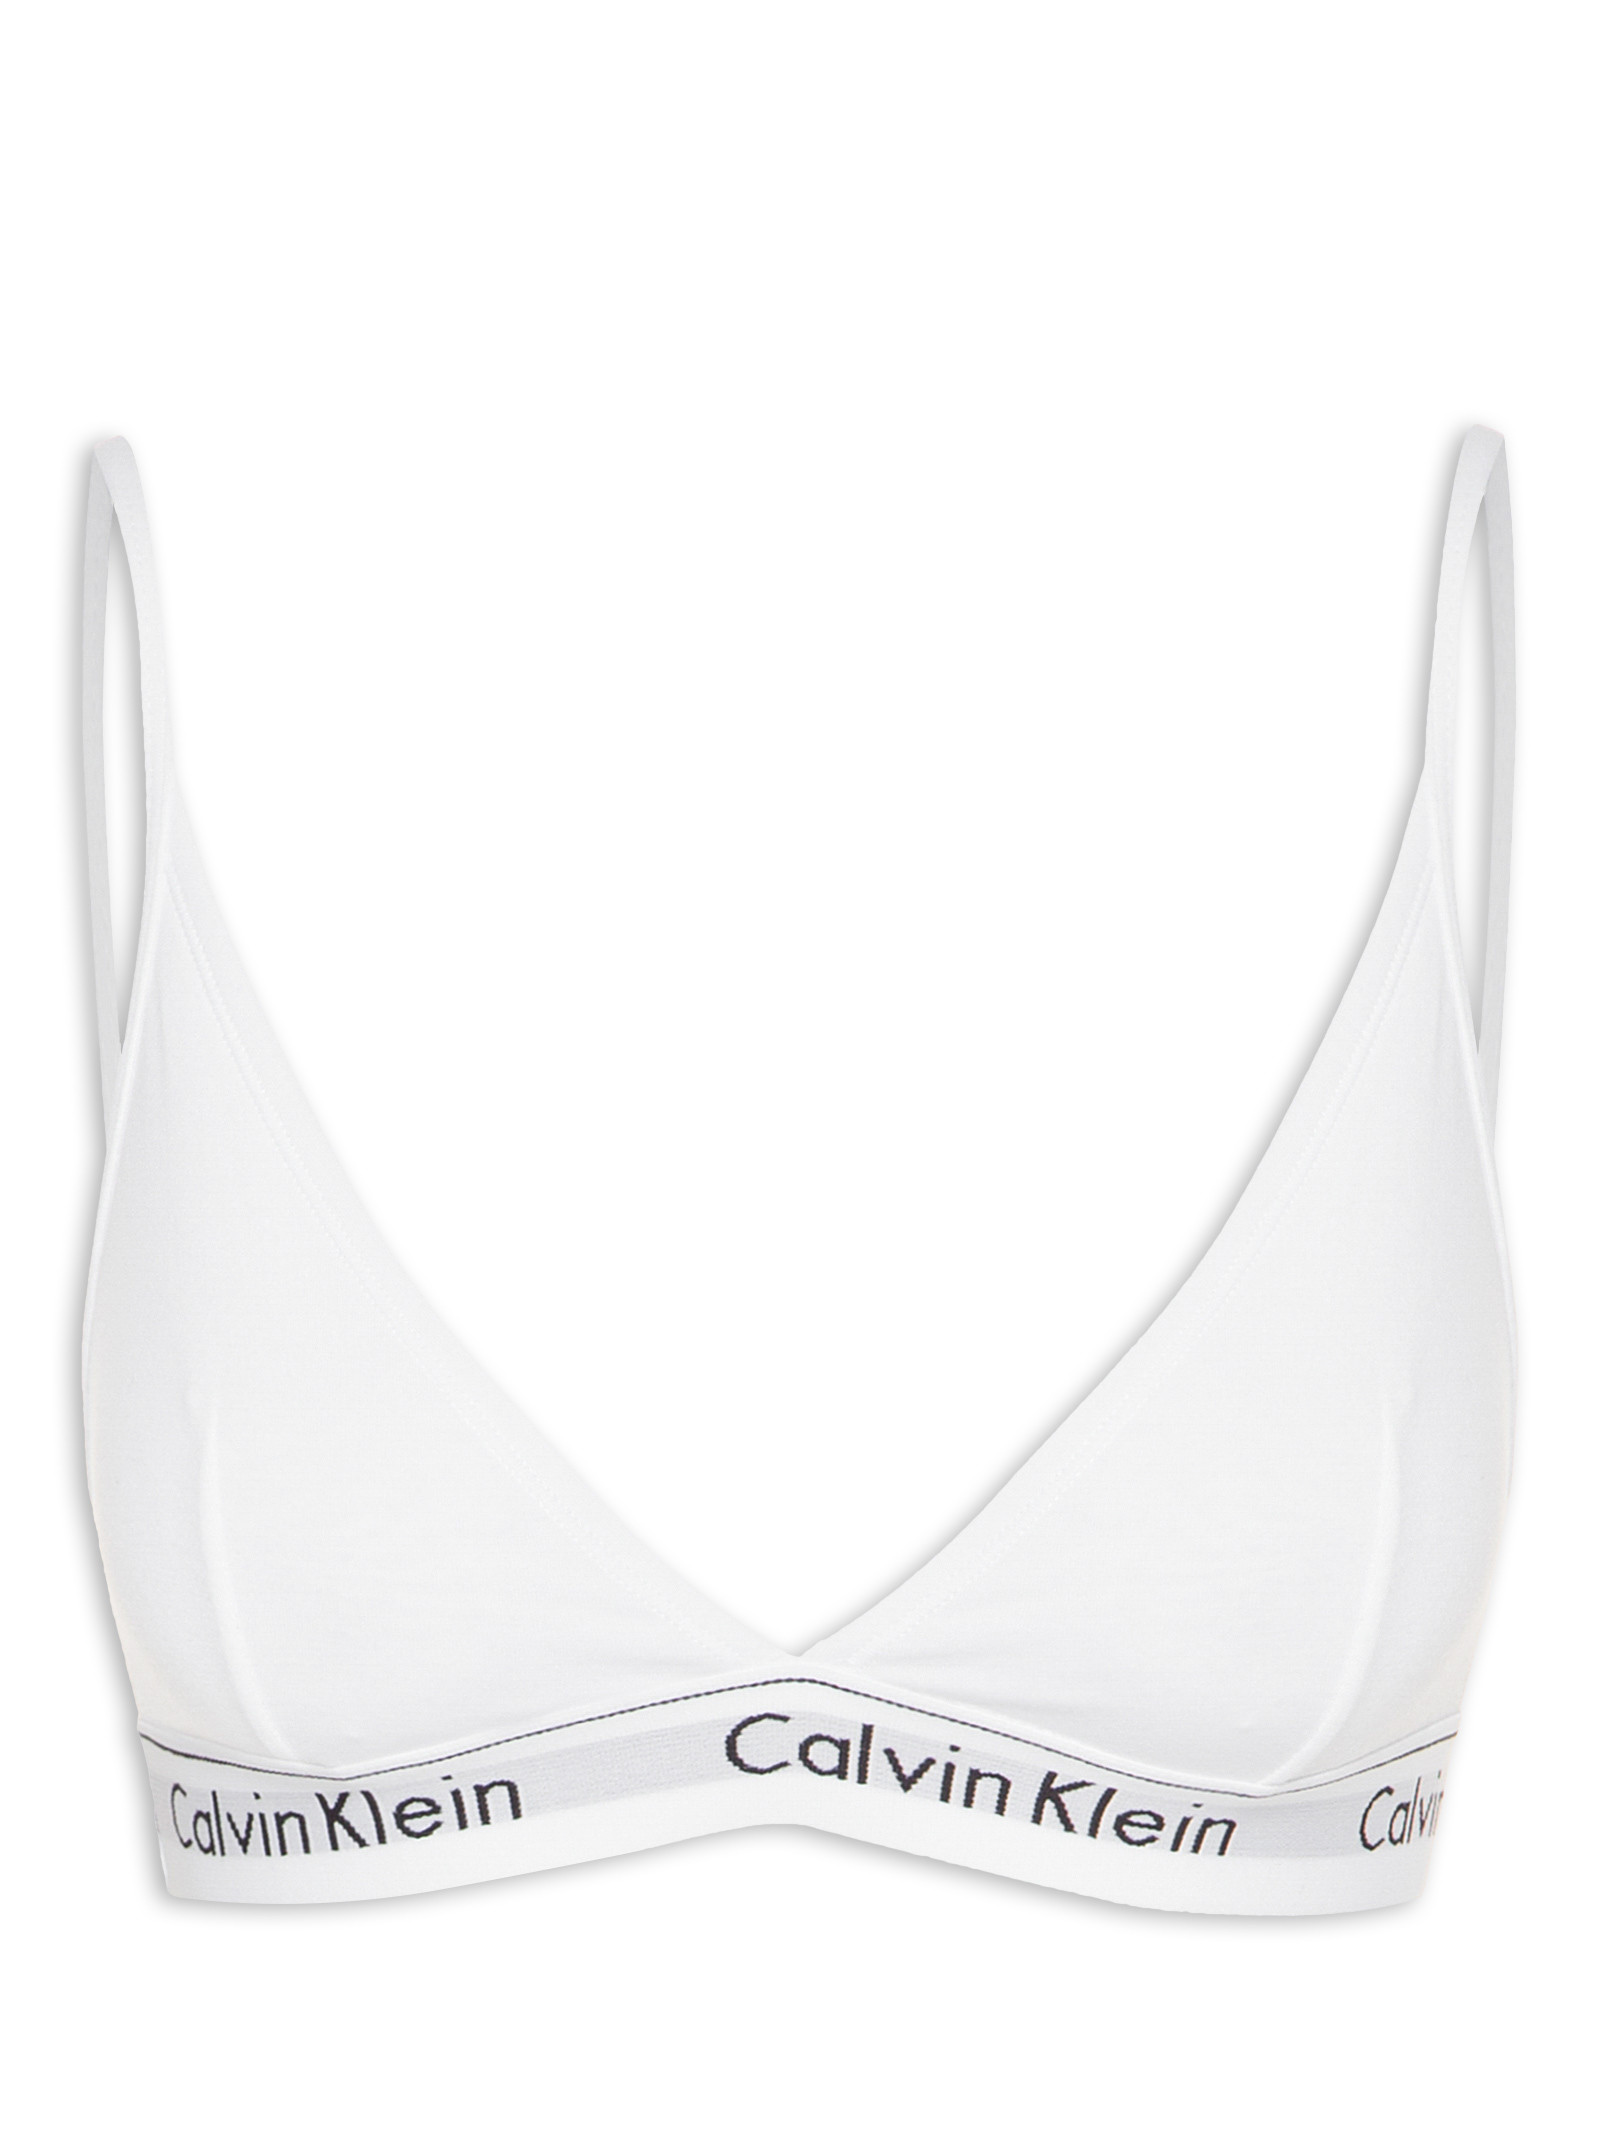 Top Triângulo Modern Cotton - Calvin Kleans Underwear - Branco - Shop2gether